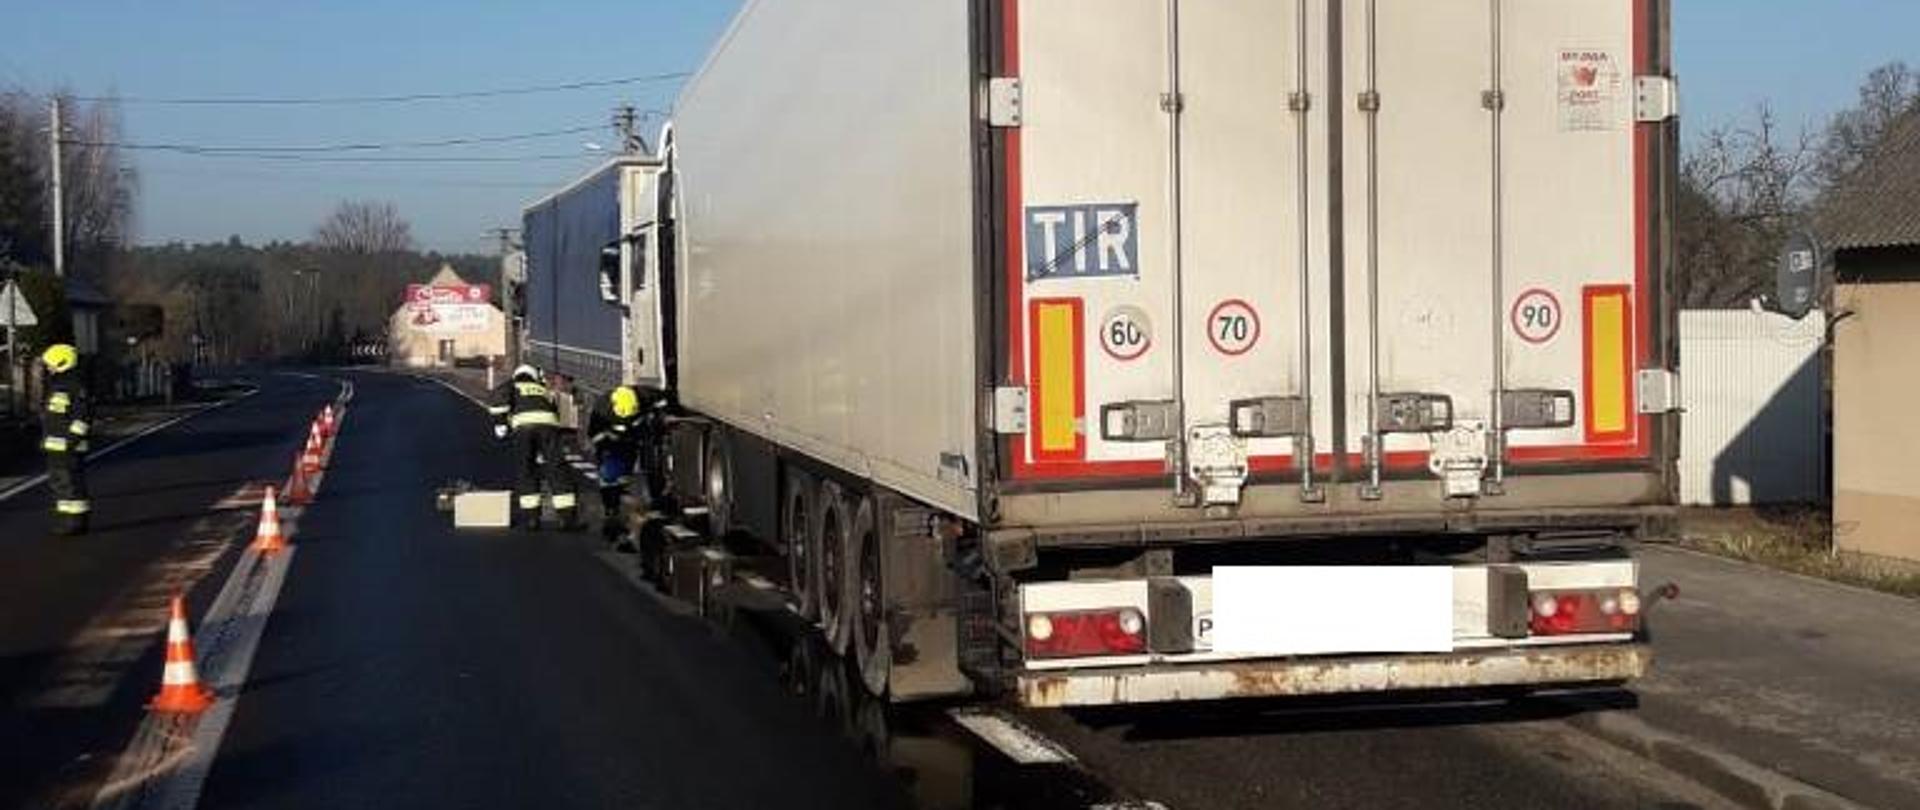 Droga krajowa numer 78 w miejscowości Damiany, dwa samochody ciężarowe uczestniczące w kolizji stoją w zatoczce autobusowej, ruch odbywa się wahadłowo, regulowany przez strażaków, jeden pas jezdni zanieczyszczony olejem napędowym wyciekającym z uszkodzonego w wyniku kolizji zbiornika paliwa